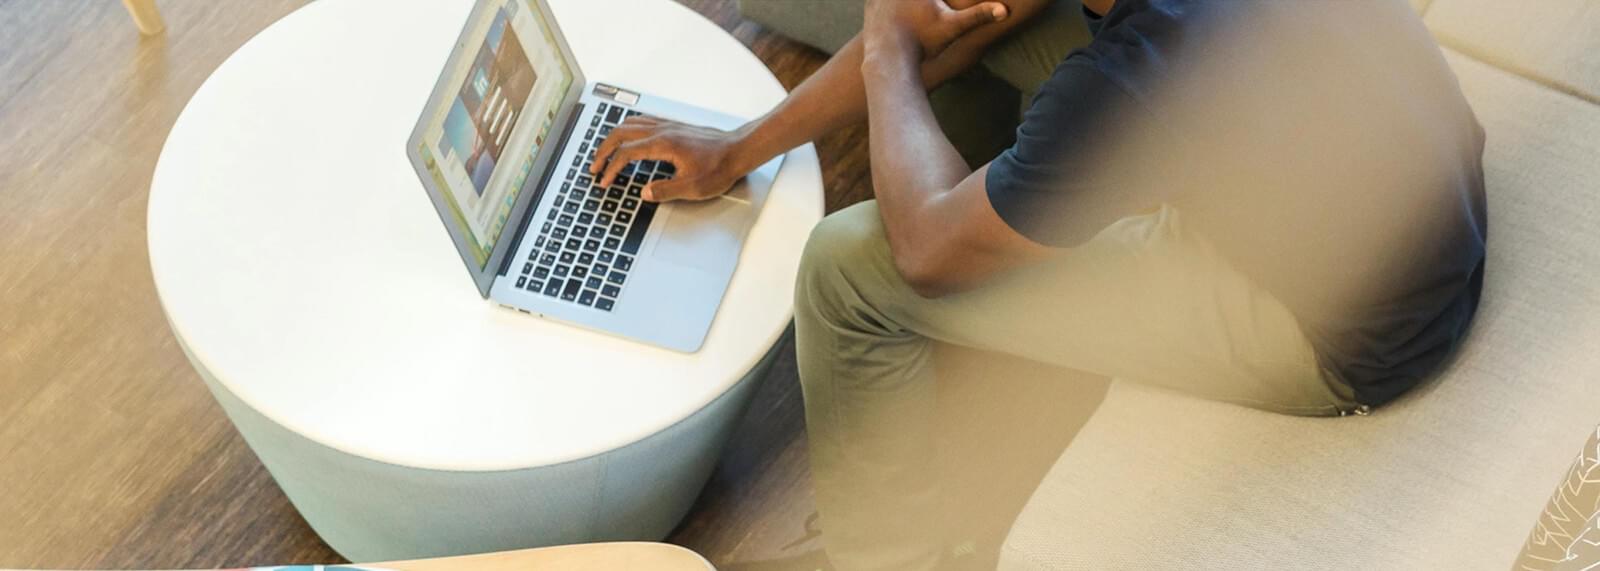 Cropped image of man typing on laptop keyboard.